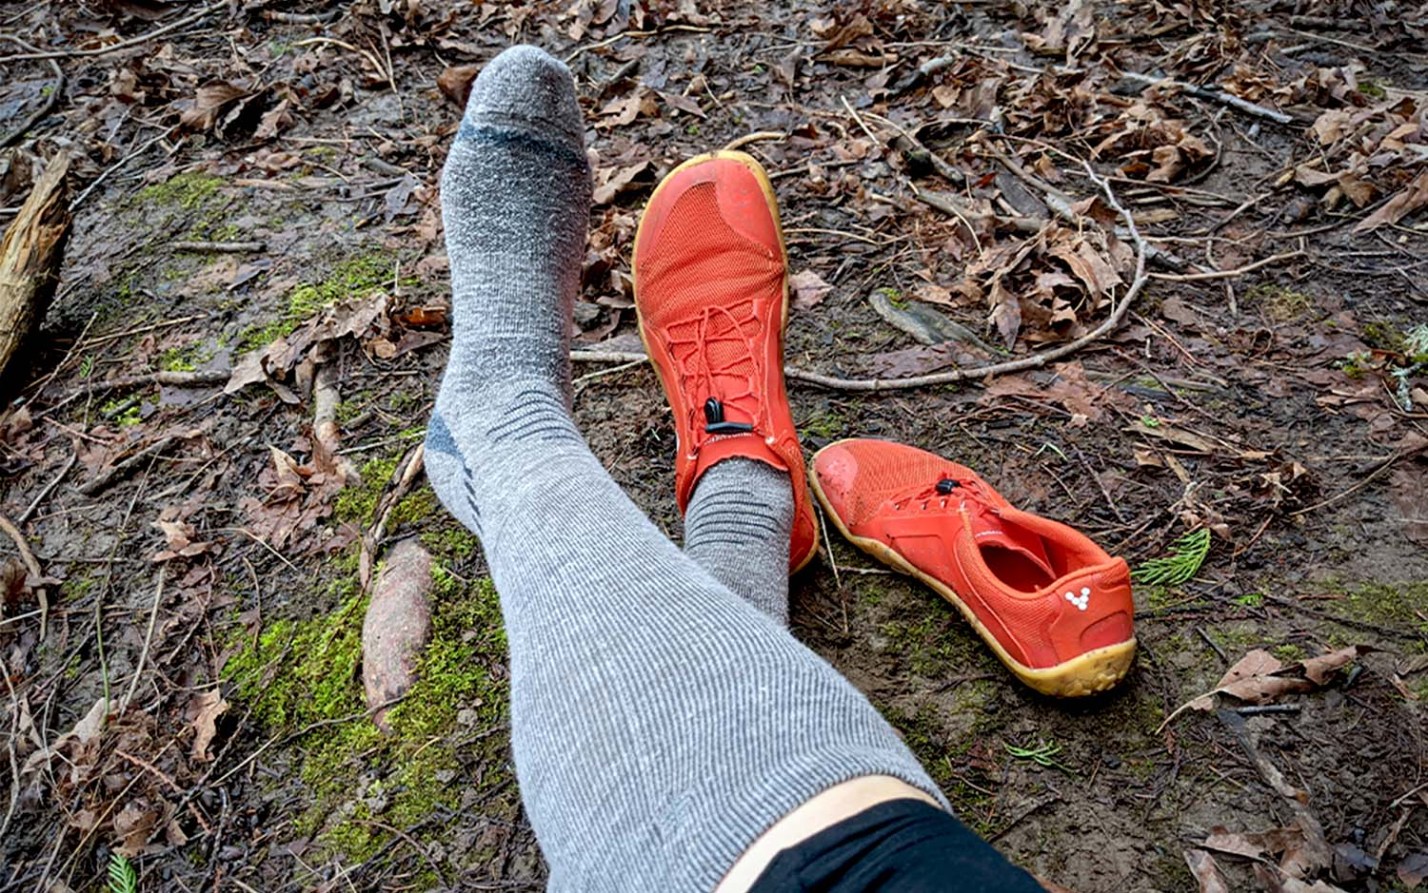 Merino socks for hiking